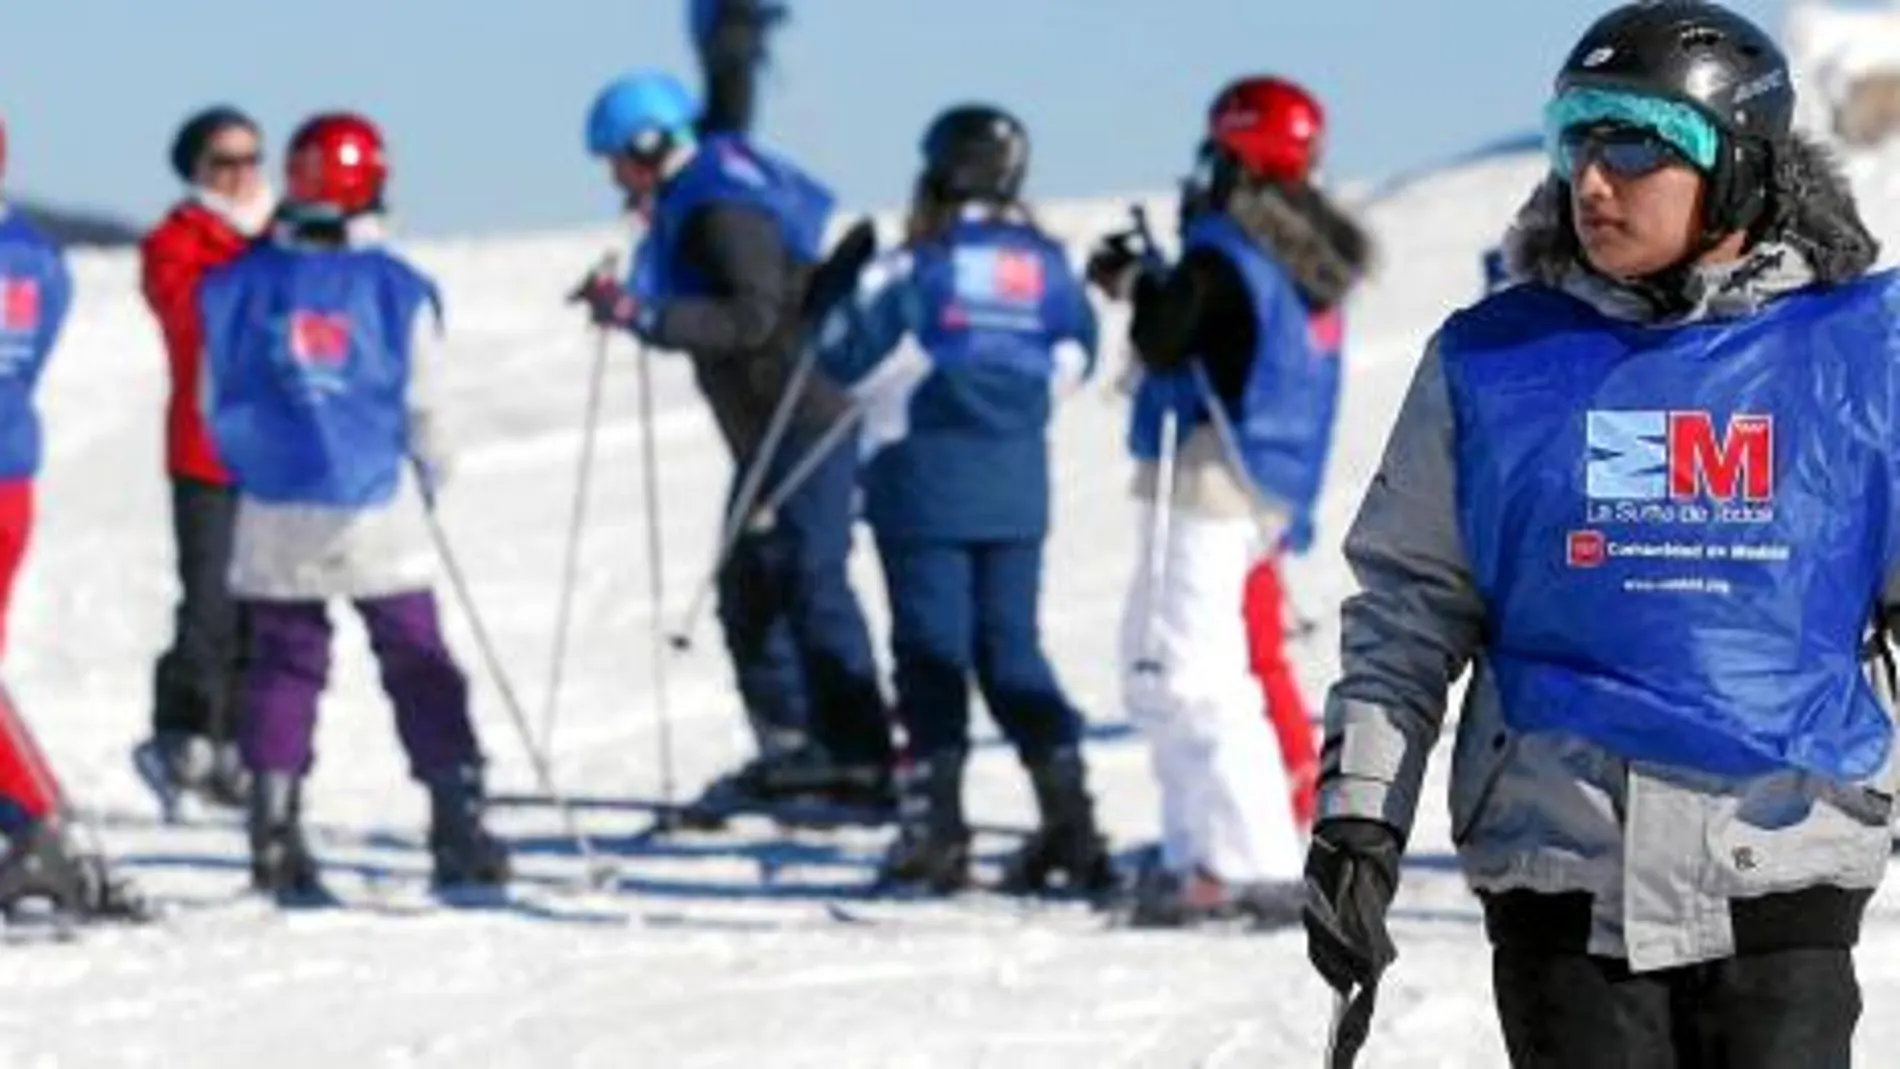 Los madrileños aficionados al esquí, o simplemente a pasar un día en la nieve, ya podrán disfrutar de las pistas este fin de semana